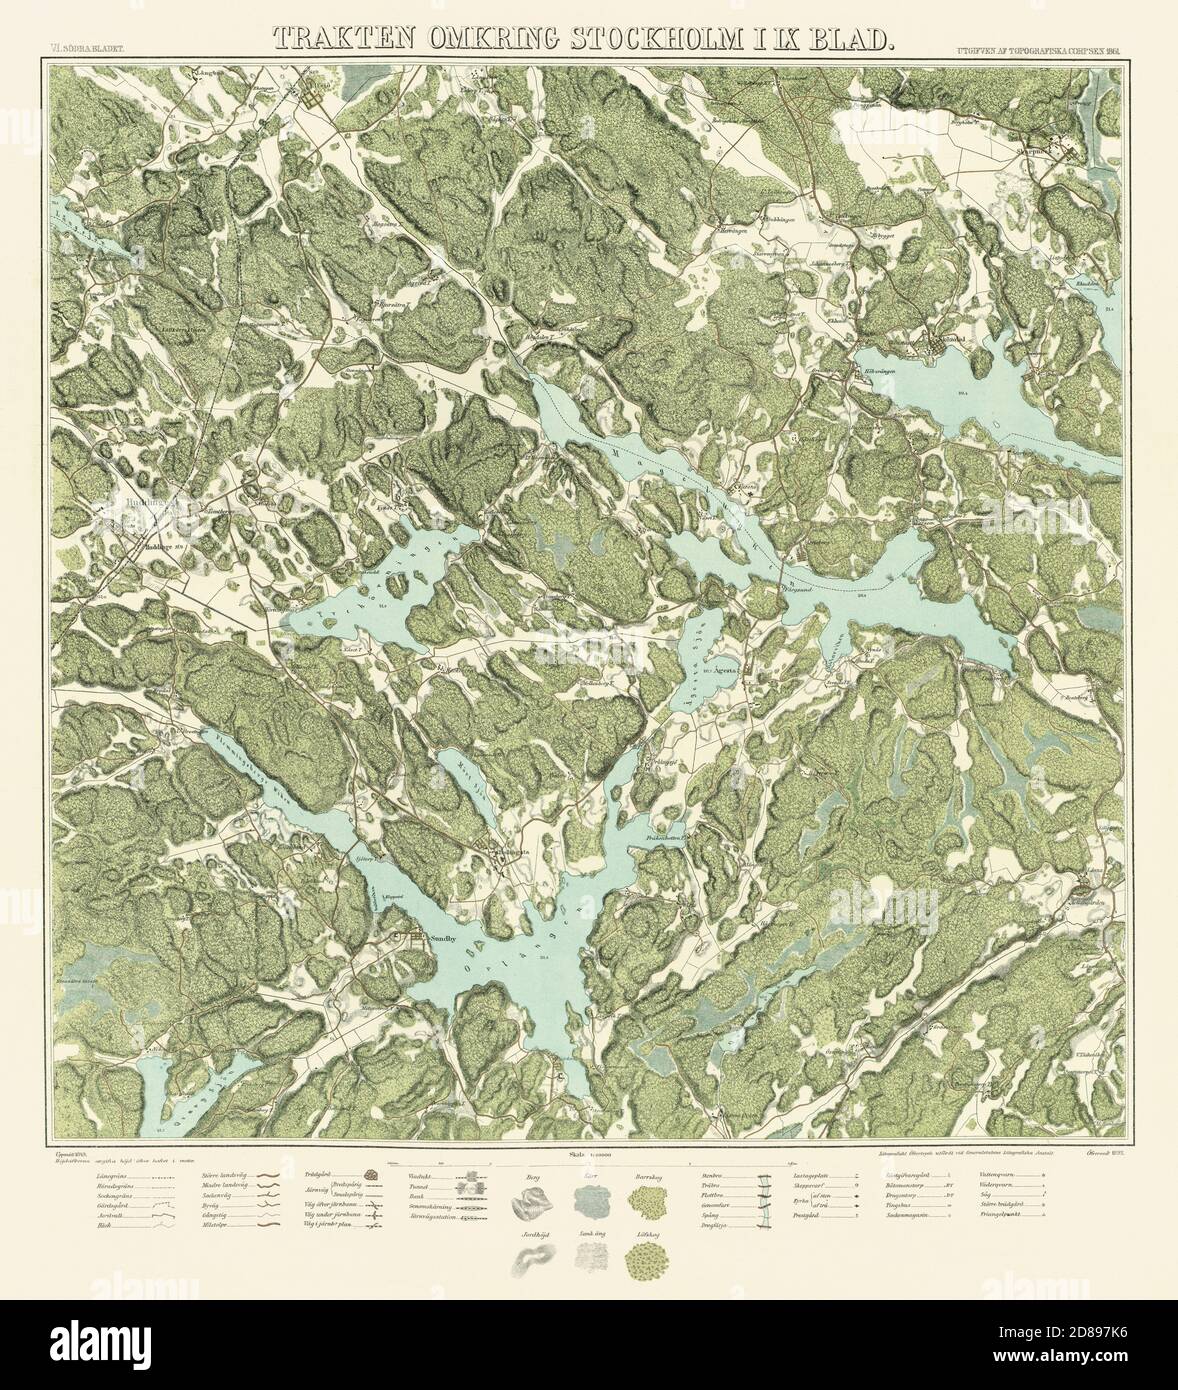 Carte de Stockholm, 'Trakten omkring Stockholm' 1861. Neuf cartes fait une carte complète de Stockholm. Banque D'Images